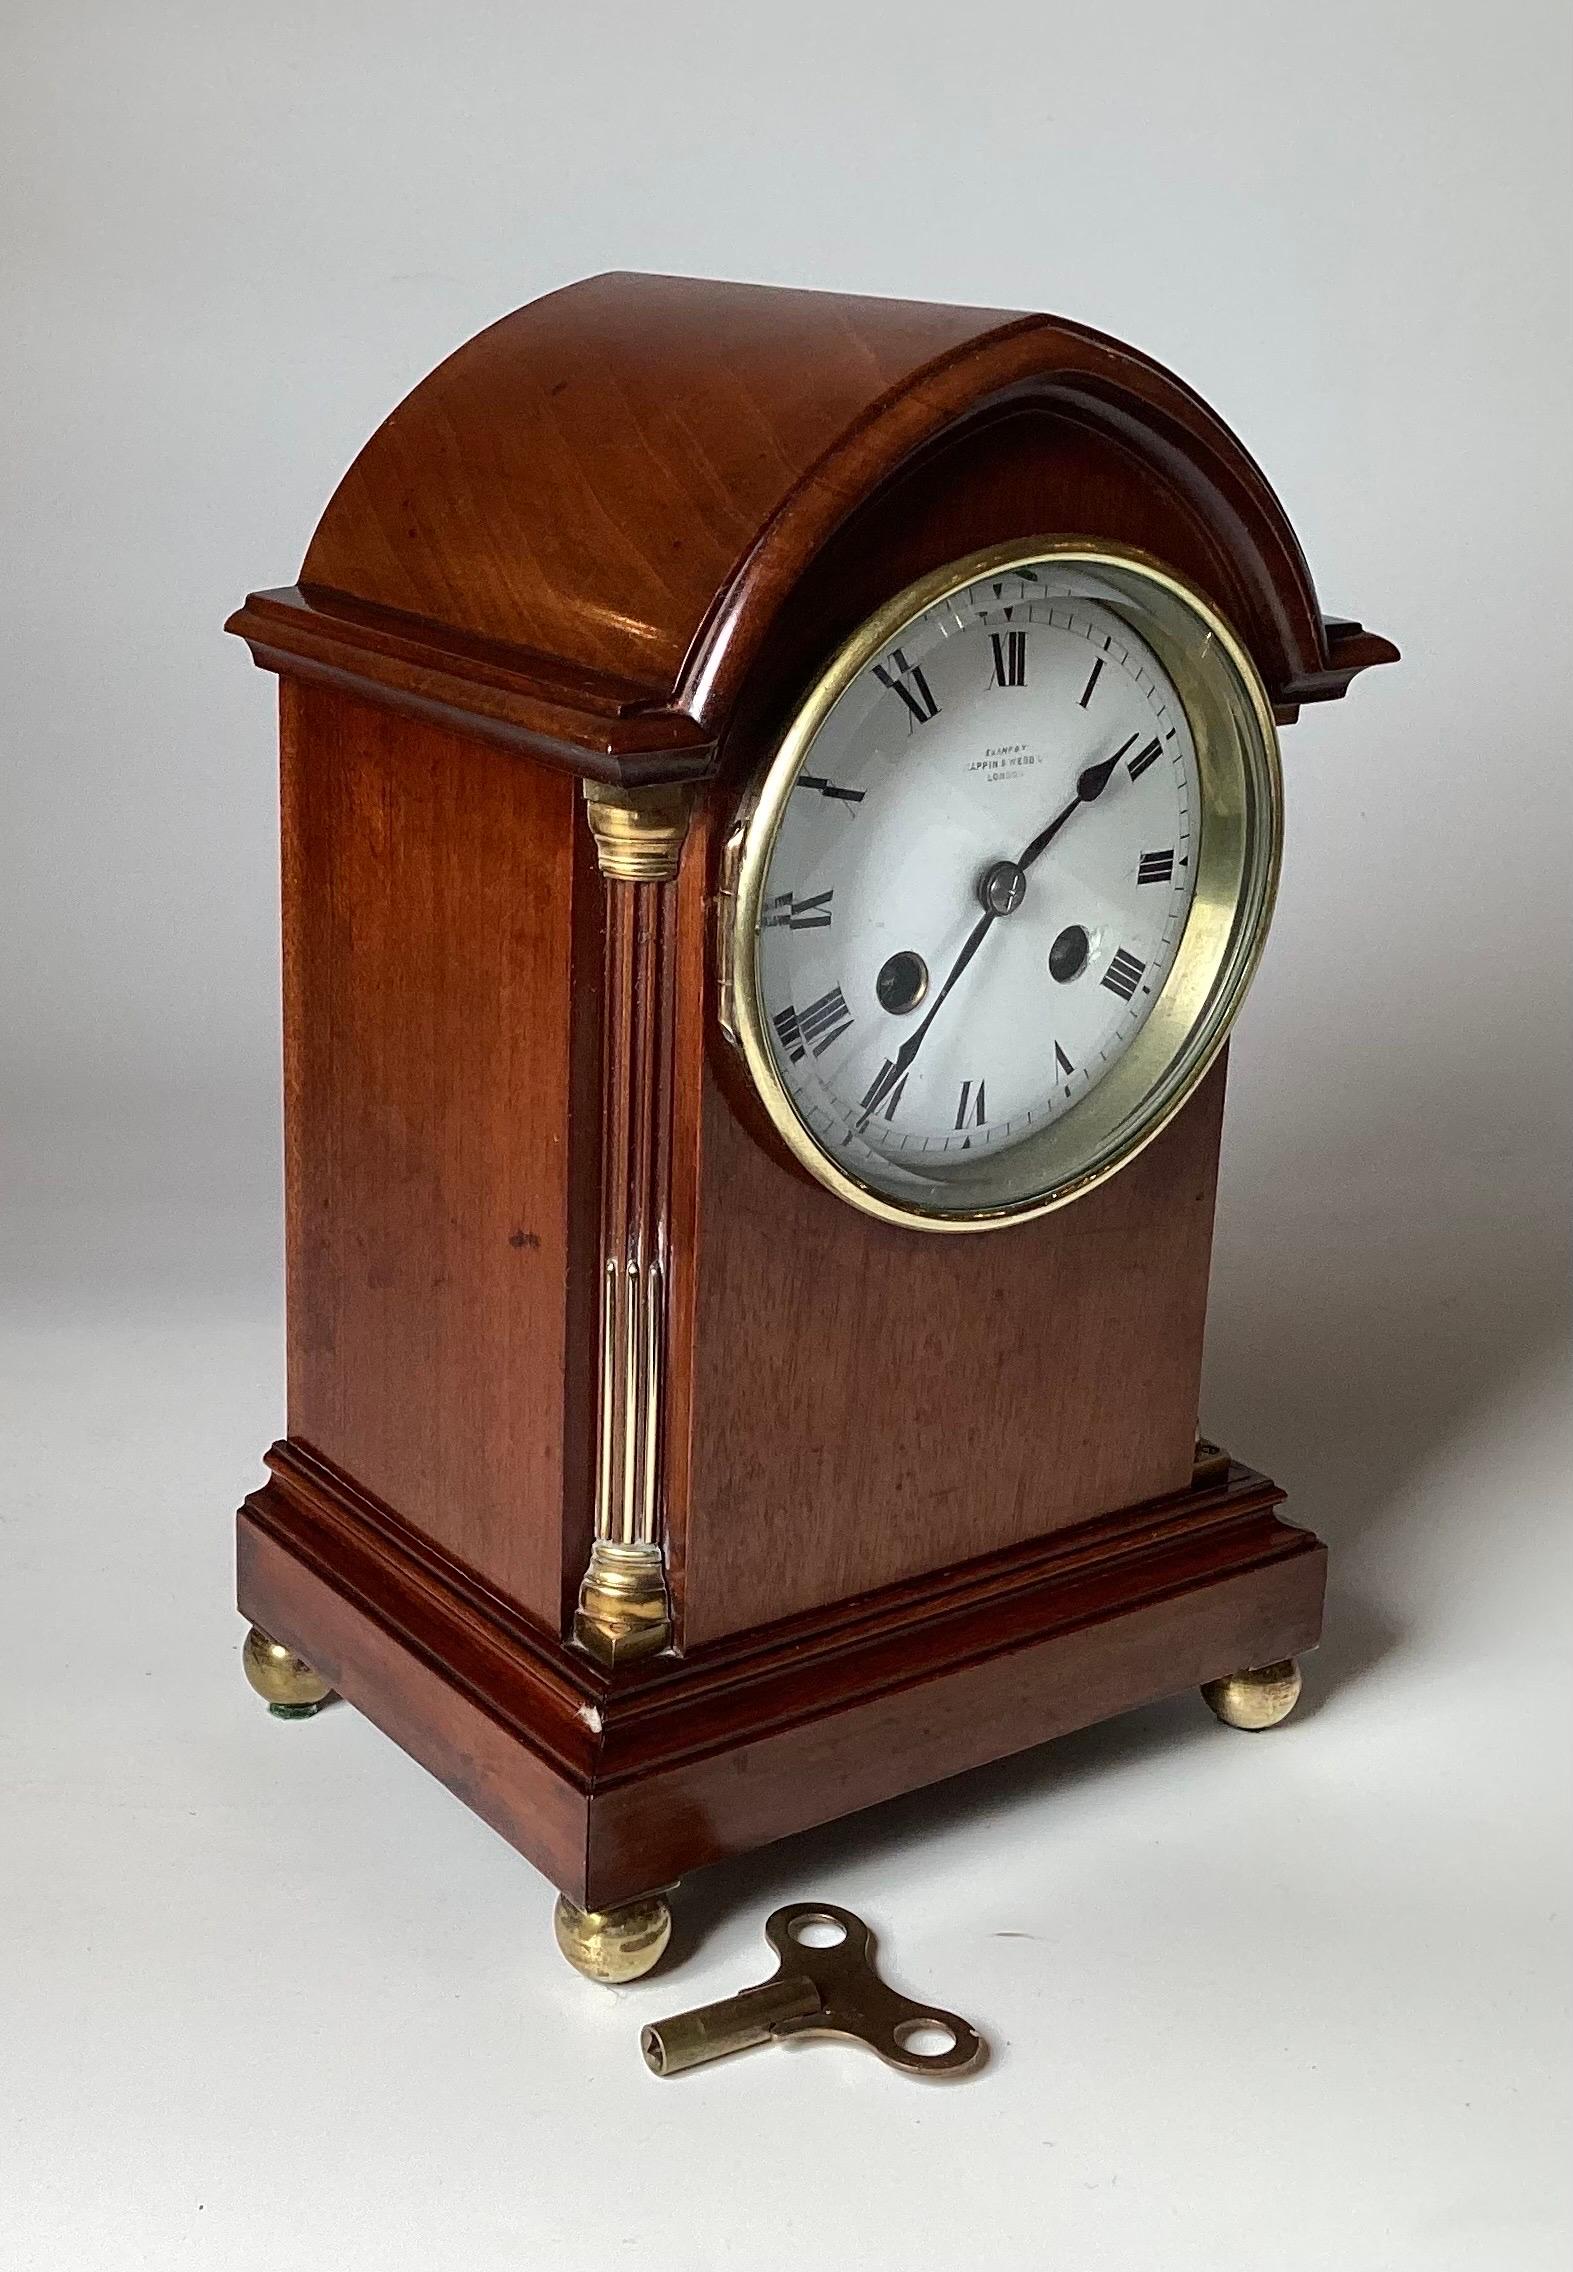 Pequeño reloj de chimenea francés de caoba, vendido por Mappin & Webb, s. XIX. Fines del siglo XIX